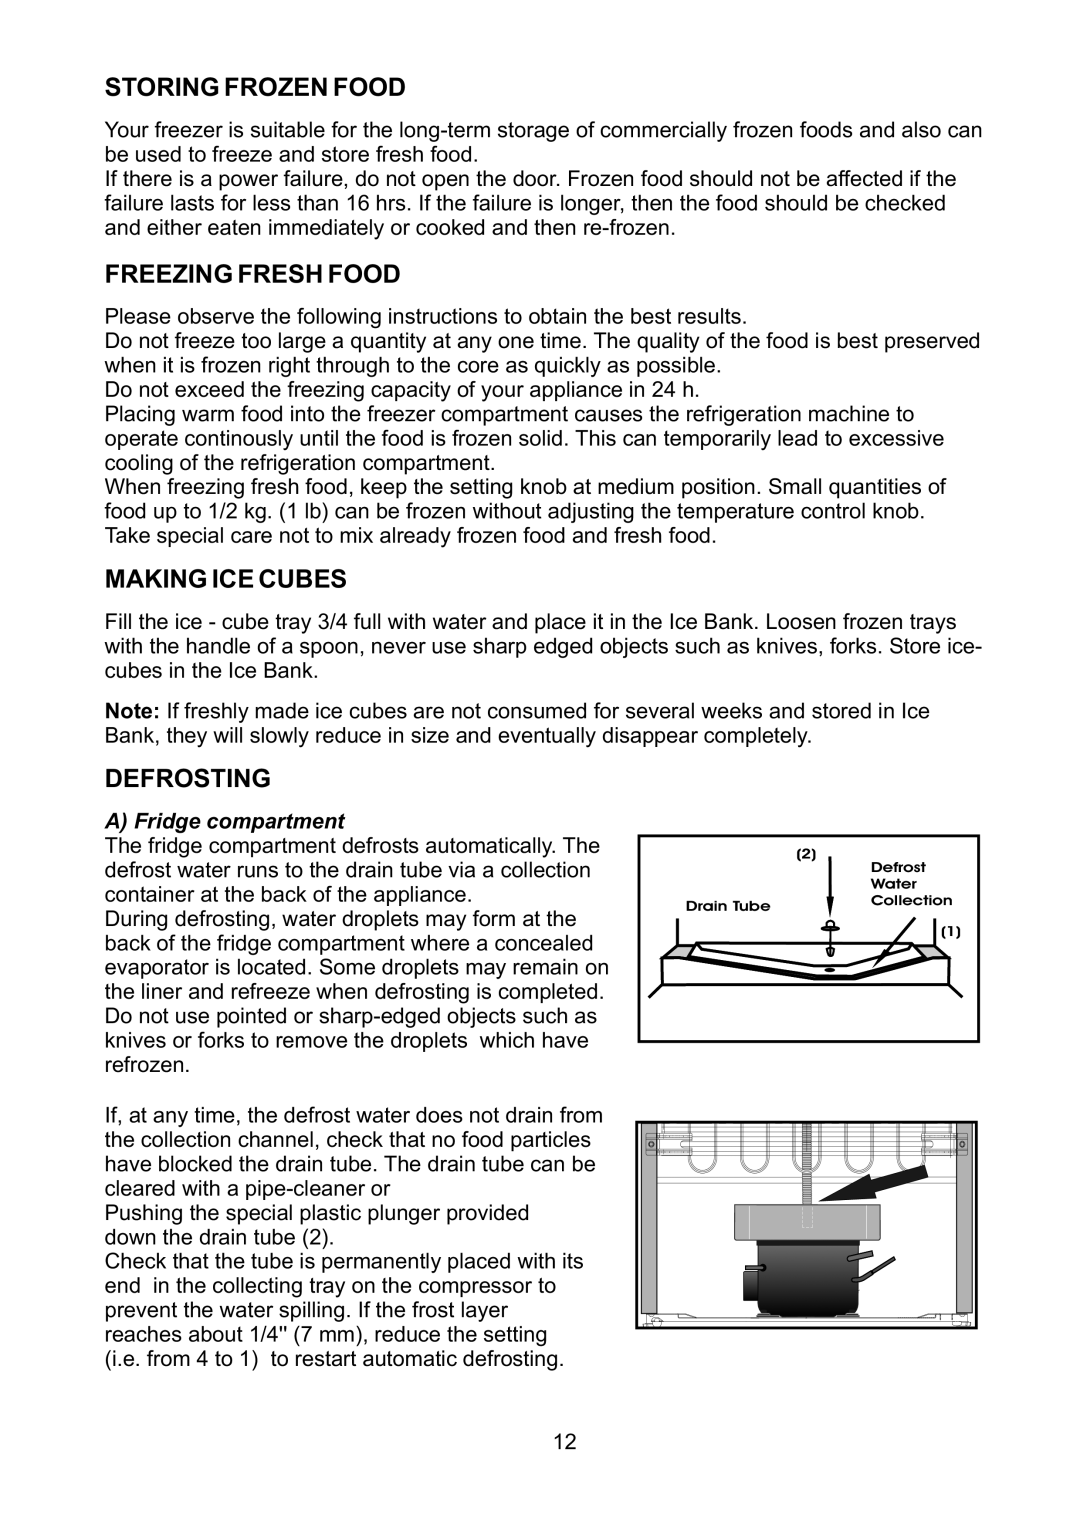 Beko CFD6643 manual Storing Frozen Food, Freezing Fresh Food, Making Ice Cubes, Defrosting 